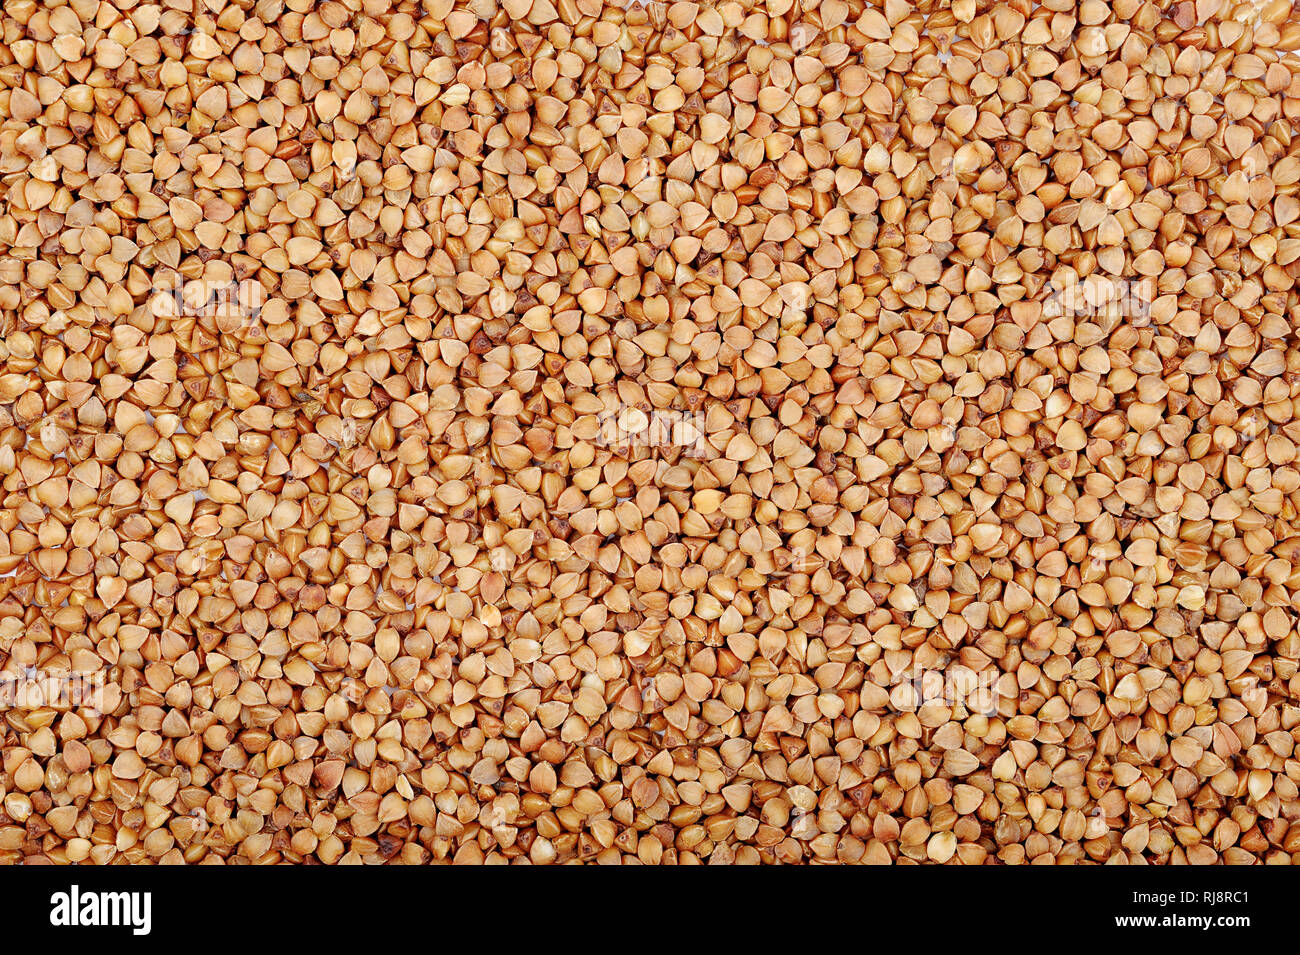 Organici di grano saraceno immagine di tessitura.grano non contiene glutine, essa può essere mangiato da persone con glutine-disturbi correlati. Utile naturale prodotto dietetico. Guarire Foto Stock